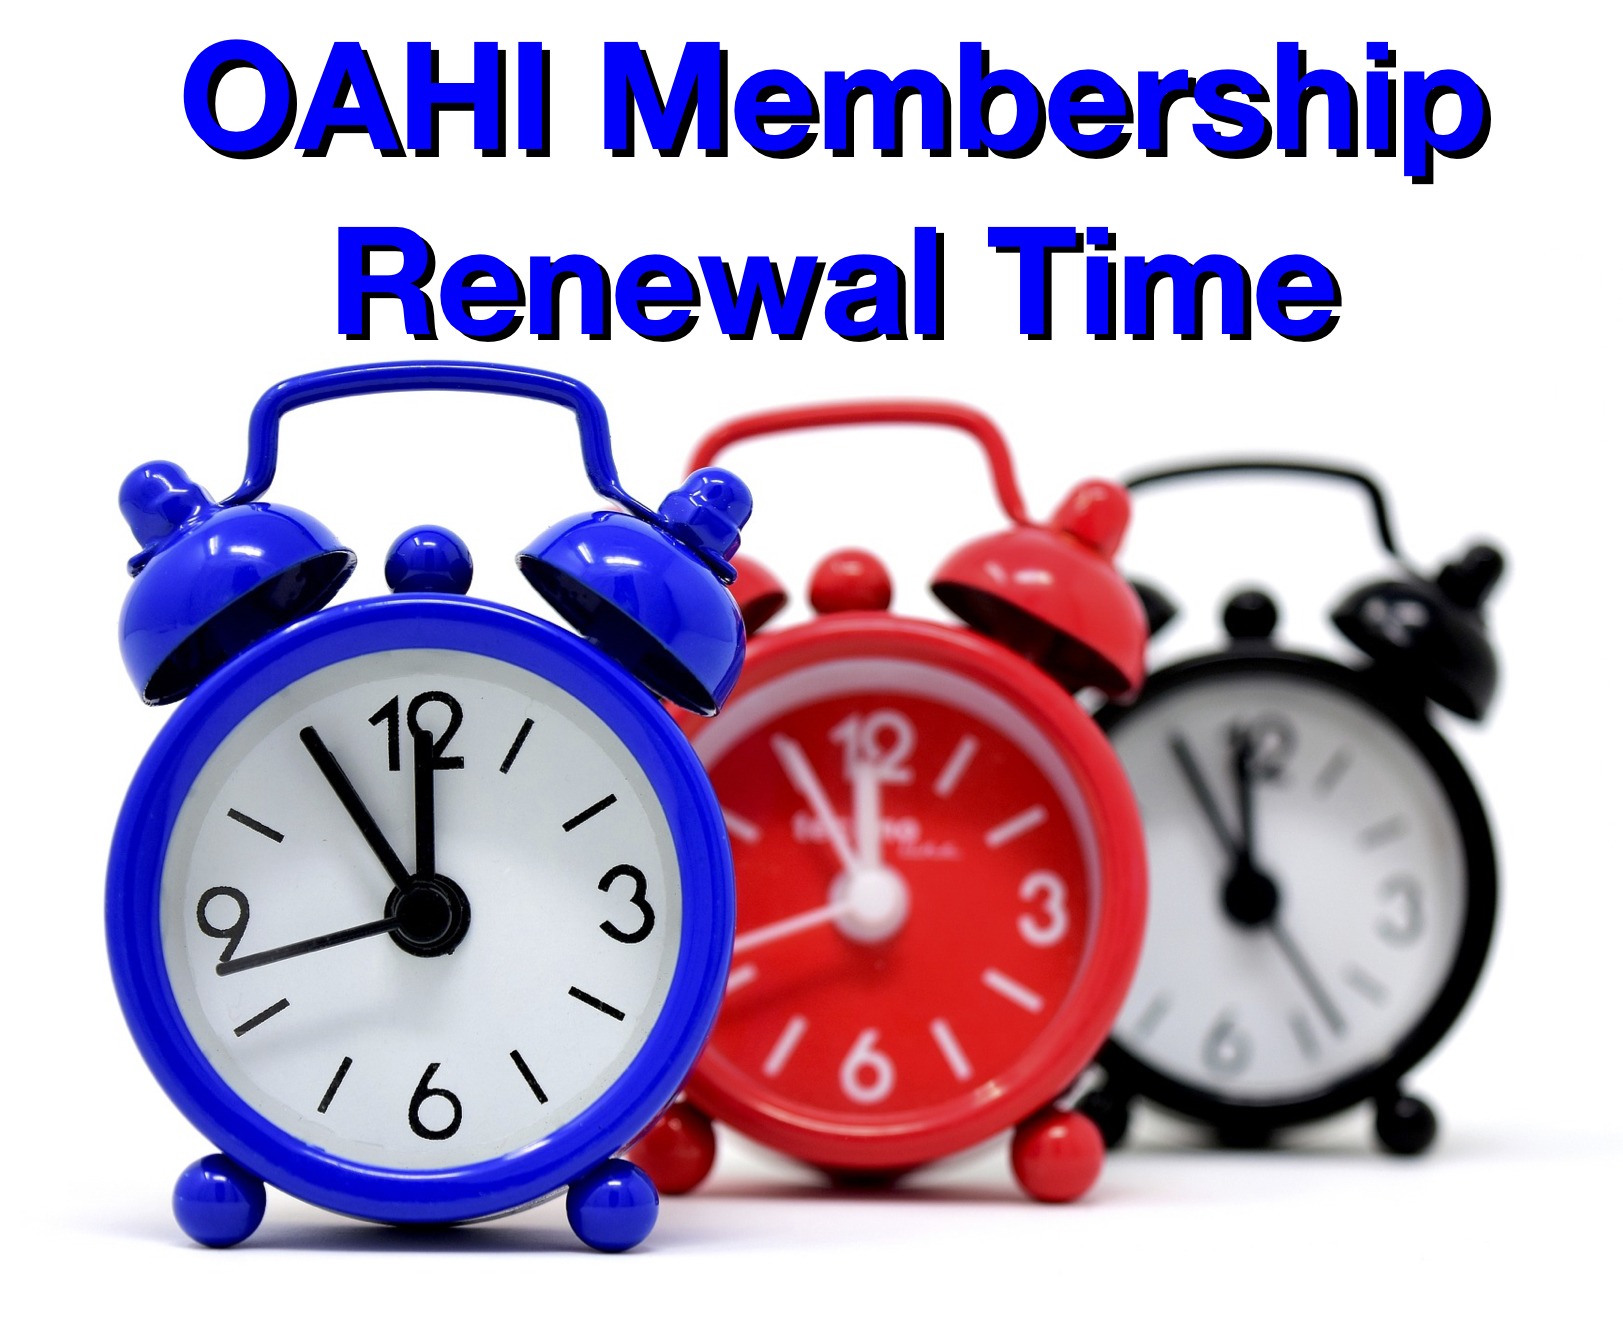   oahi_membership_renewal_1.jpg